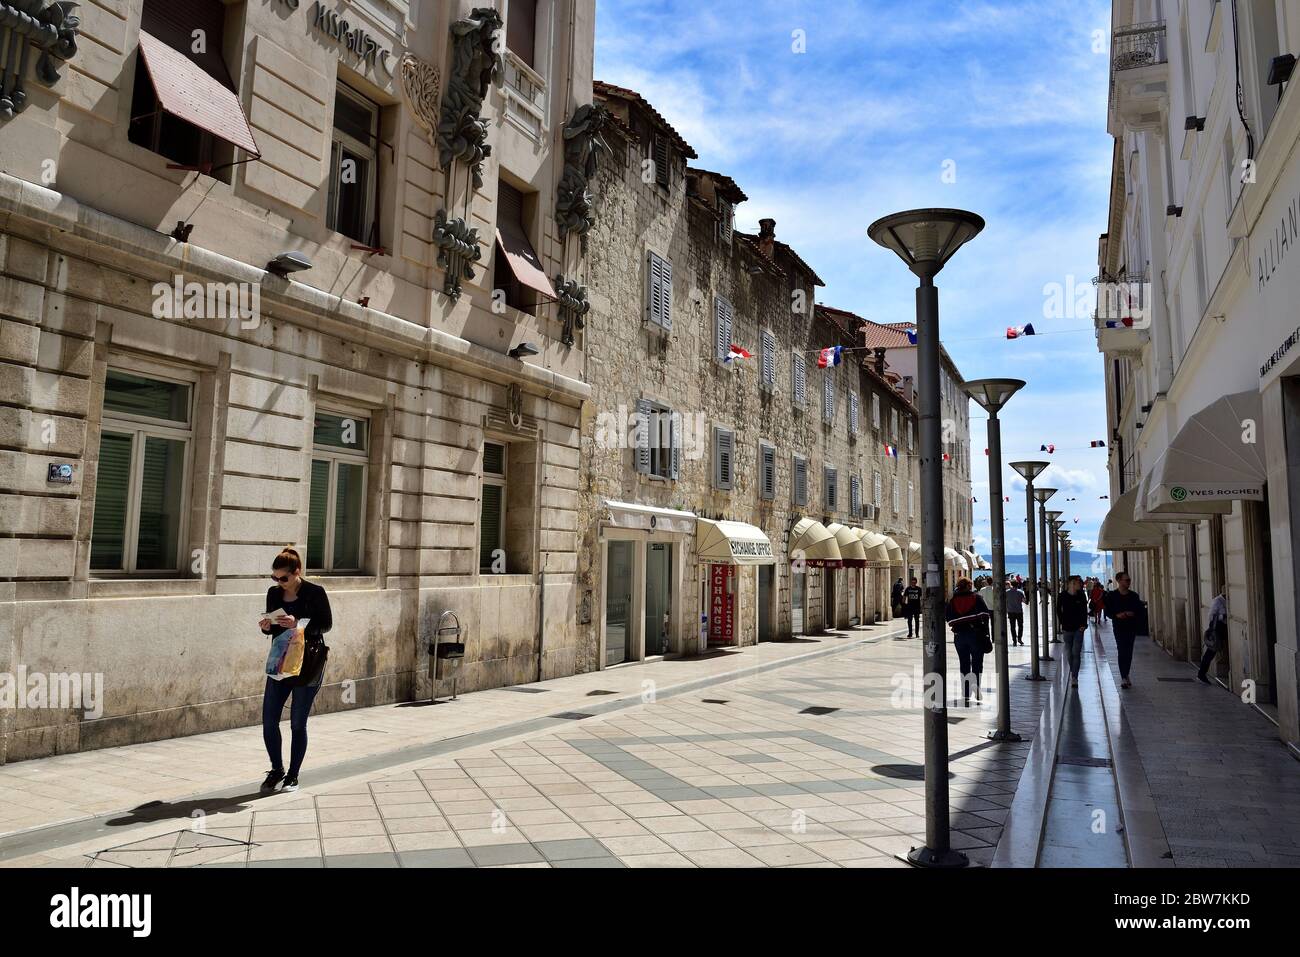 SPLIT, CROATIE - 29 AVRIL 2019: Une foule de touristes marchant dans la rue principale de Marmontova à Split au début du printemps, Croatie Banque D'Images